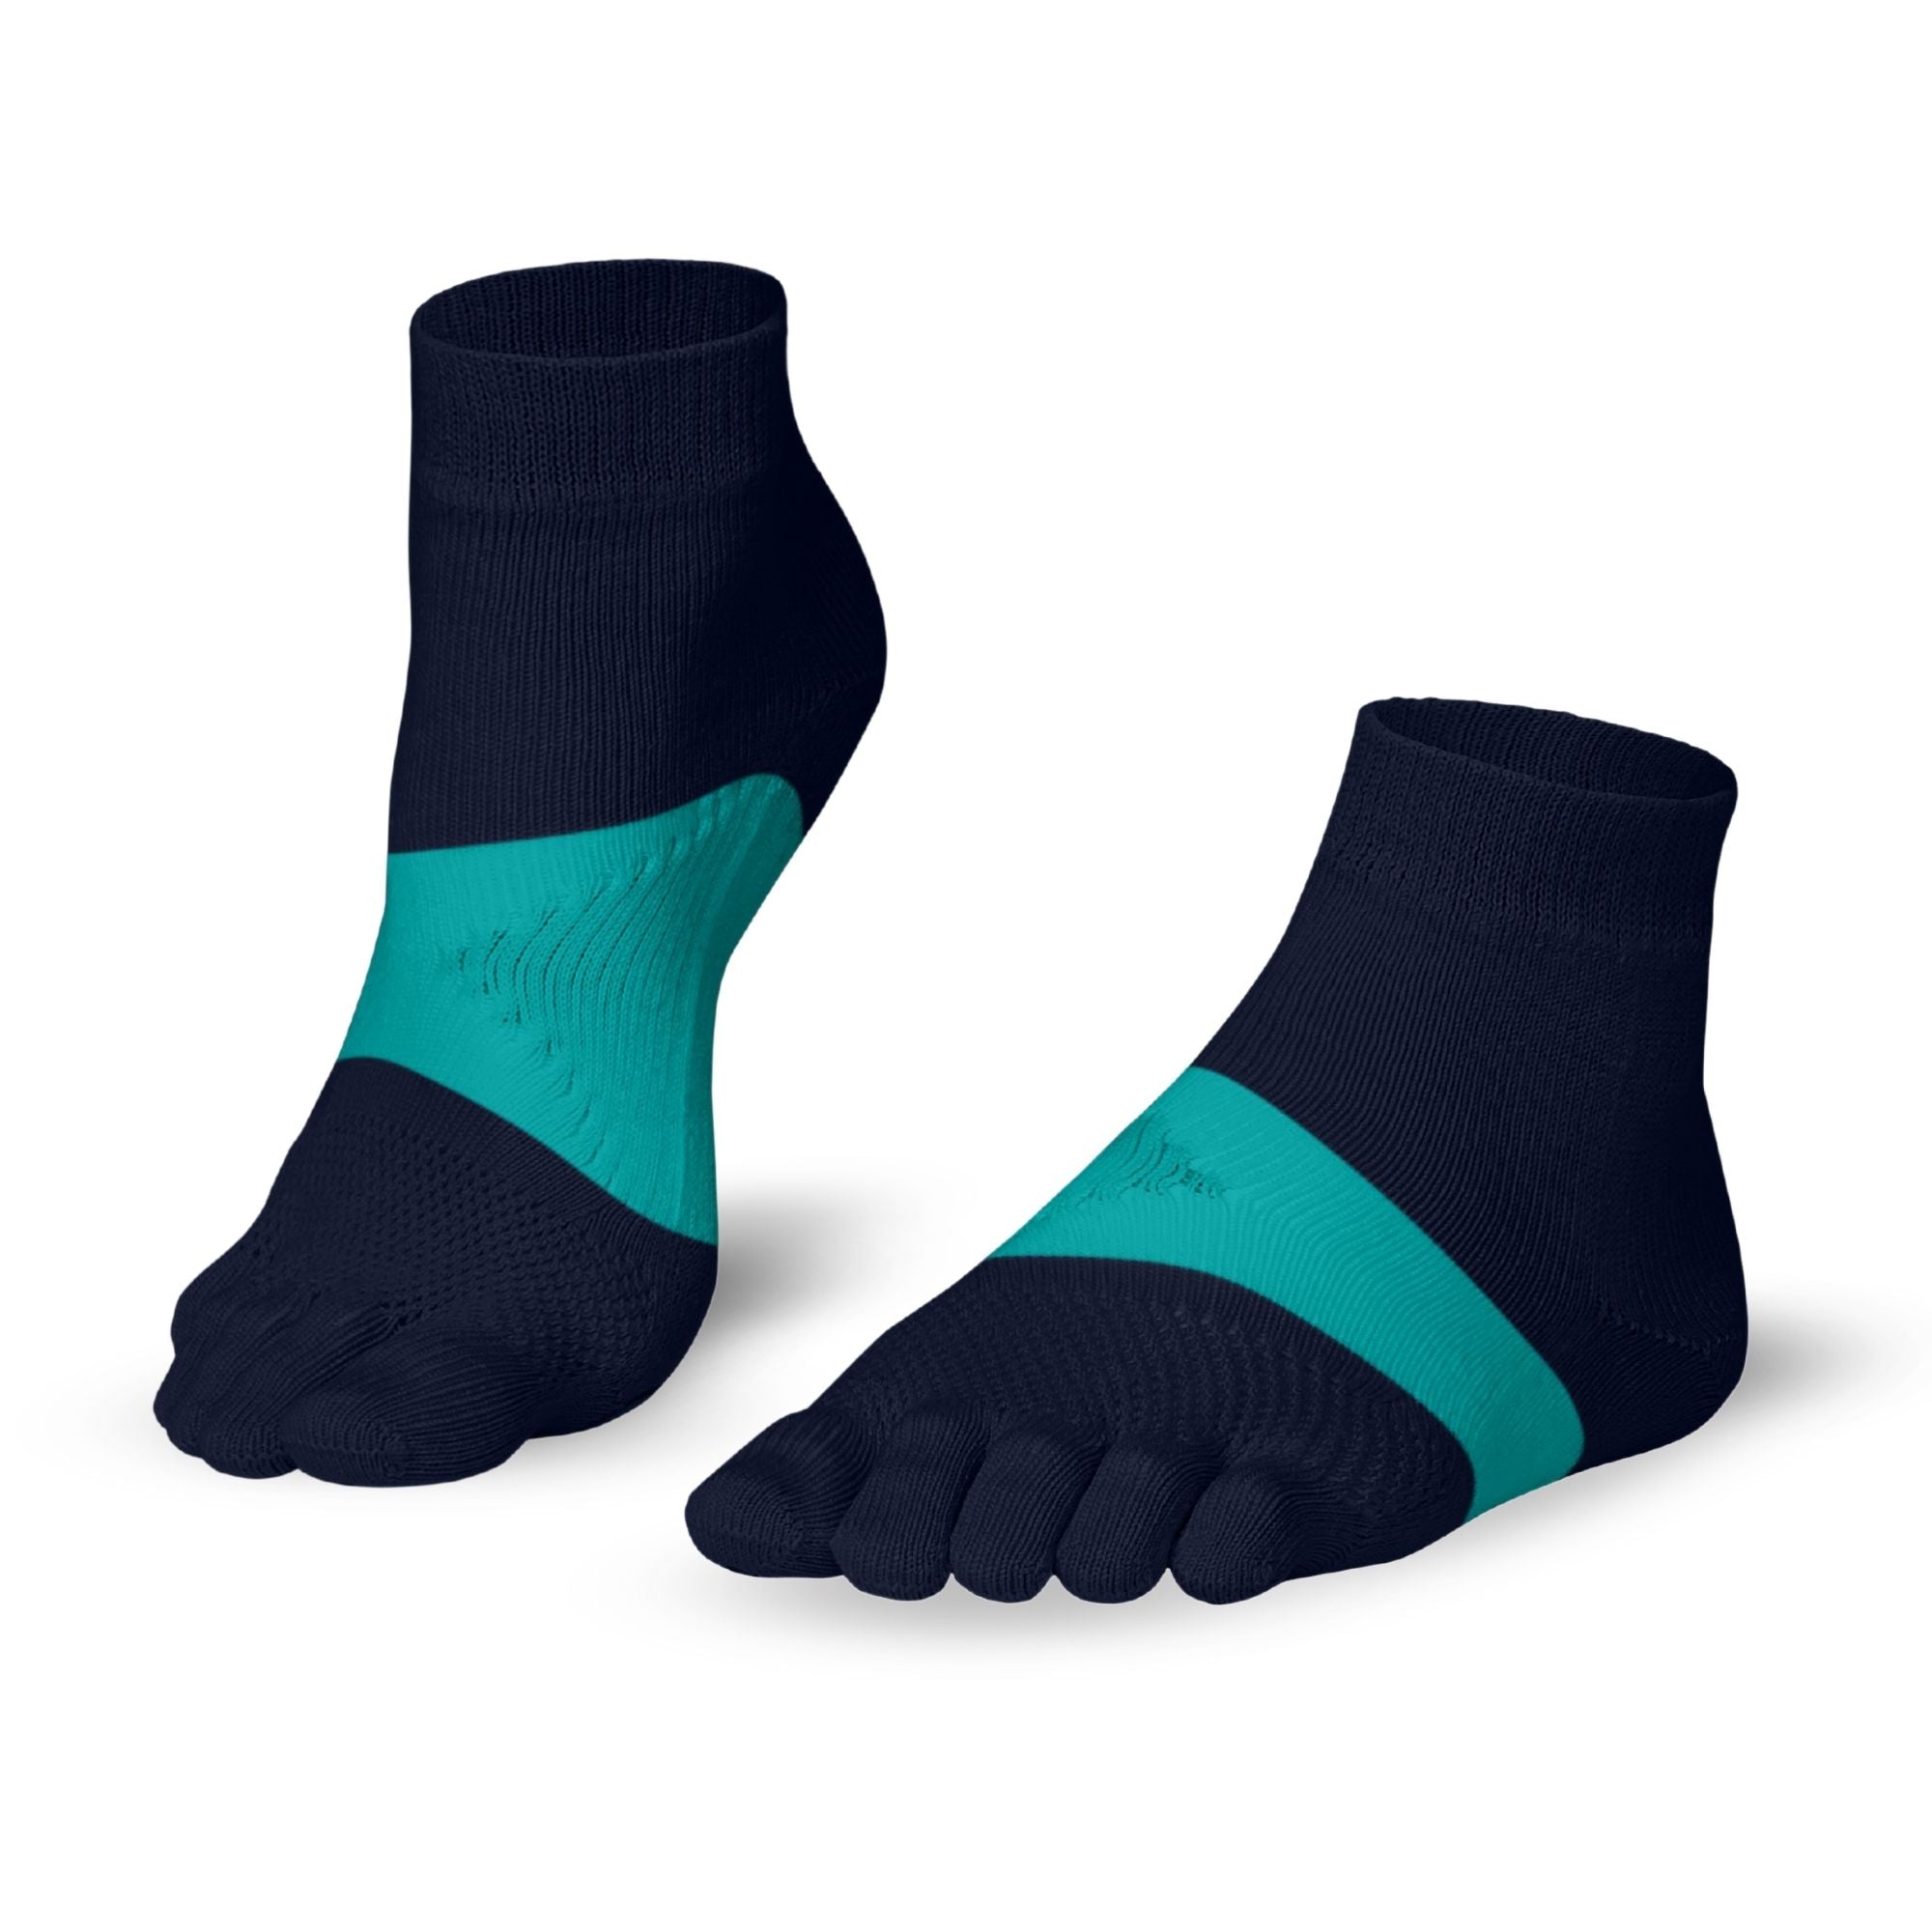 Knitido Marathon TS toe socks - Knitido®